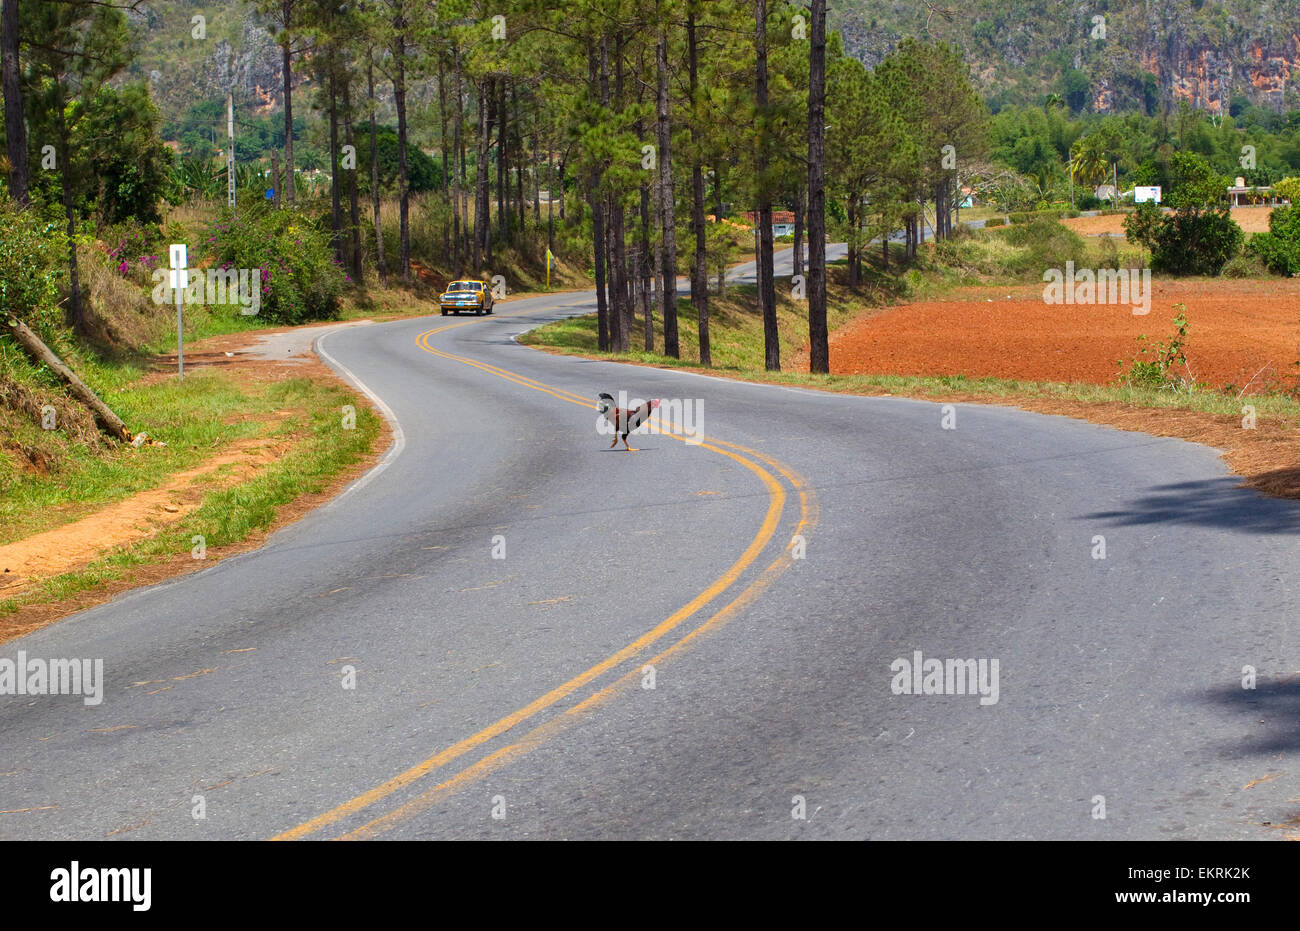 "Pourquoi le poulet a traversé la route ? 'Un poulet traversant une route dans la région de Vinales, Cuba Banque D'Images